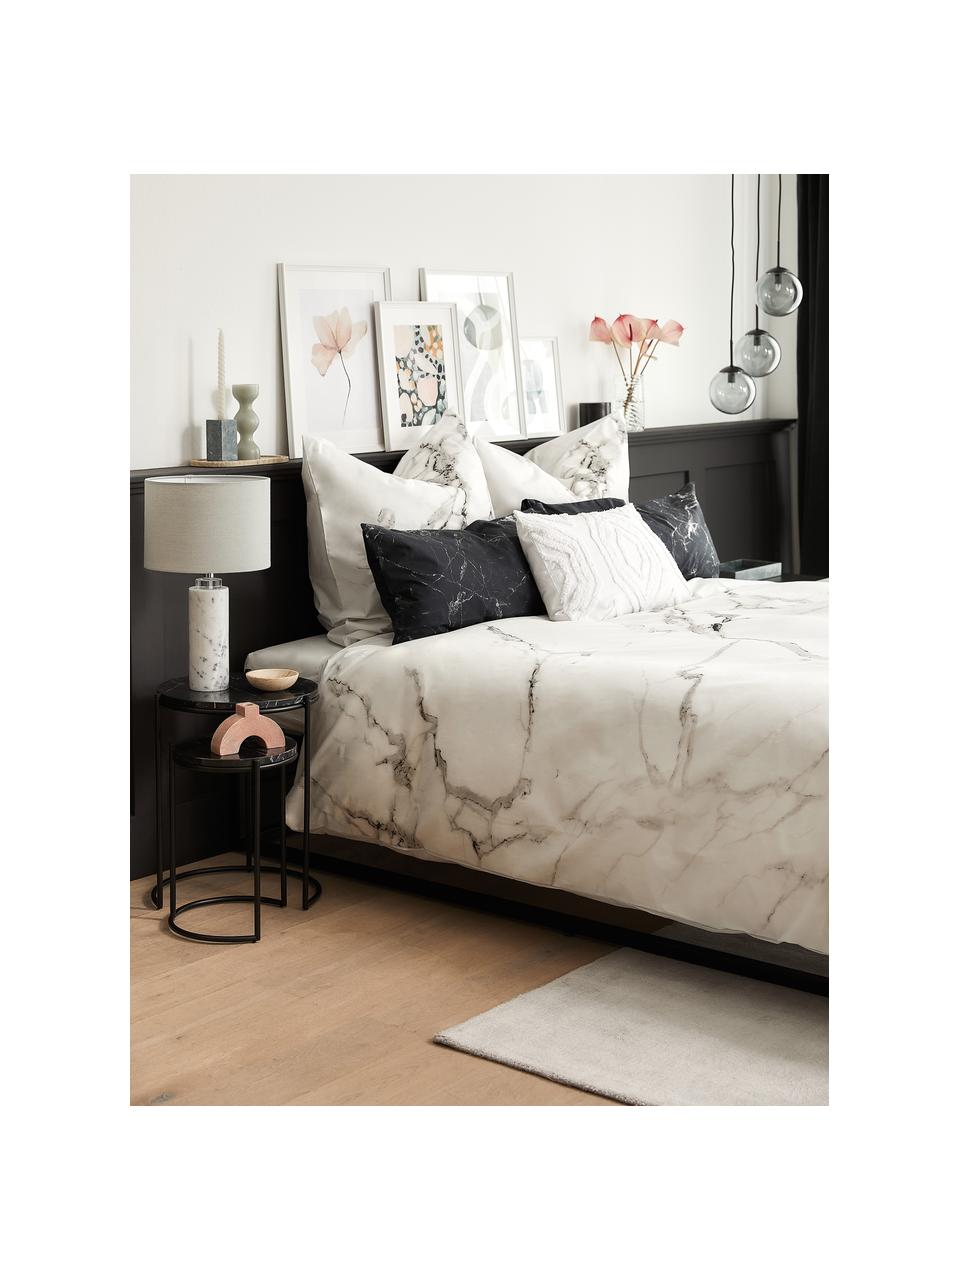 Łóżko kontynentalne bez zagłówka Enya, Nogi: tworzywo sztuczne, Jasny szary, S 140 x D 200 cm, stopień twardości H2